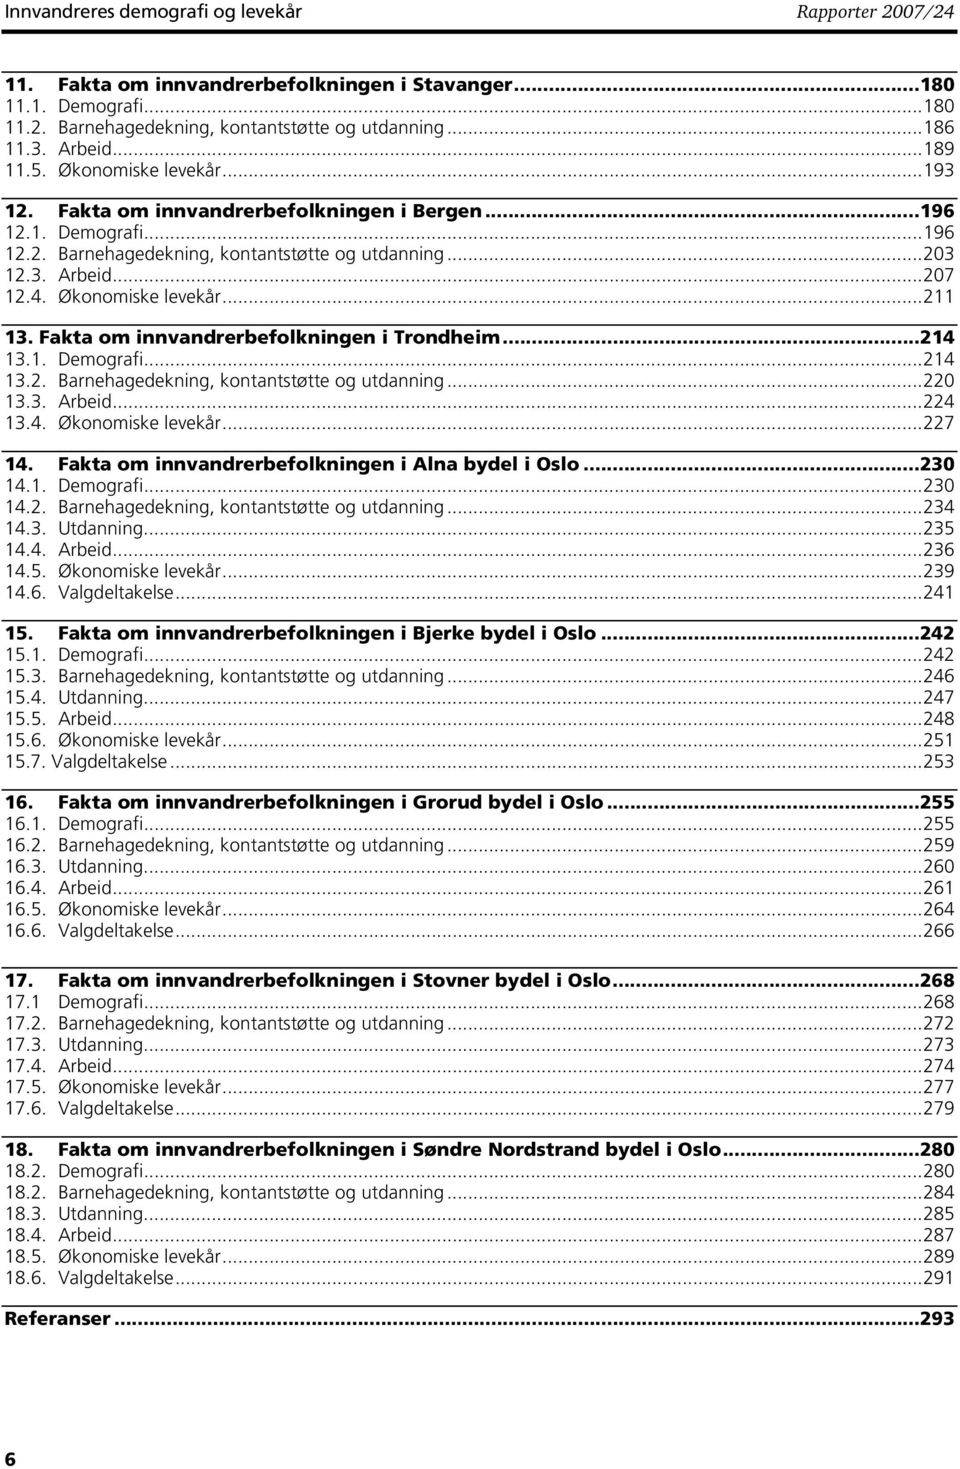 Fakta om innvandrerbefolkningen i Trondheim...214 13.1. Demografi...214 13.2. Barnehagedekning, kontantstøtte og utdanning...22 13.3. Arbeid...224 13.4. Økonomiske levek...227 14.